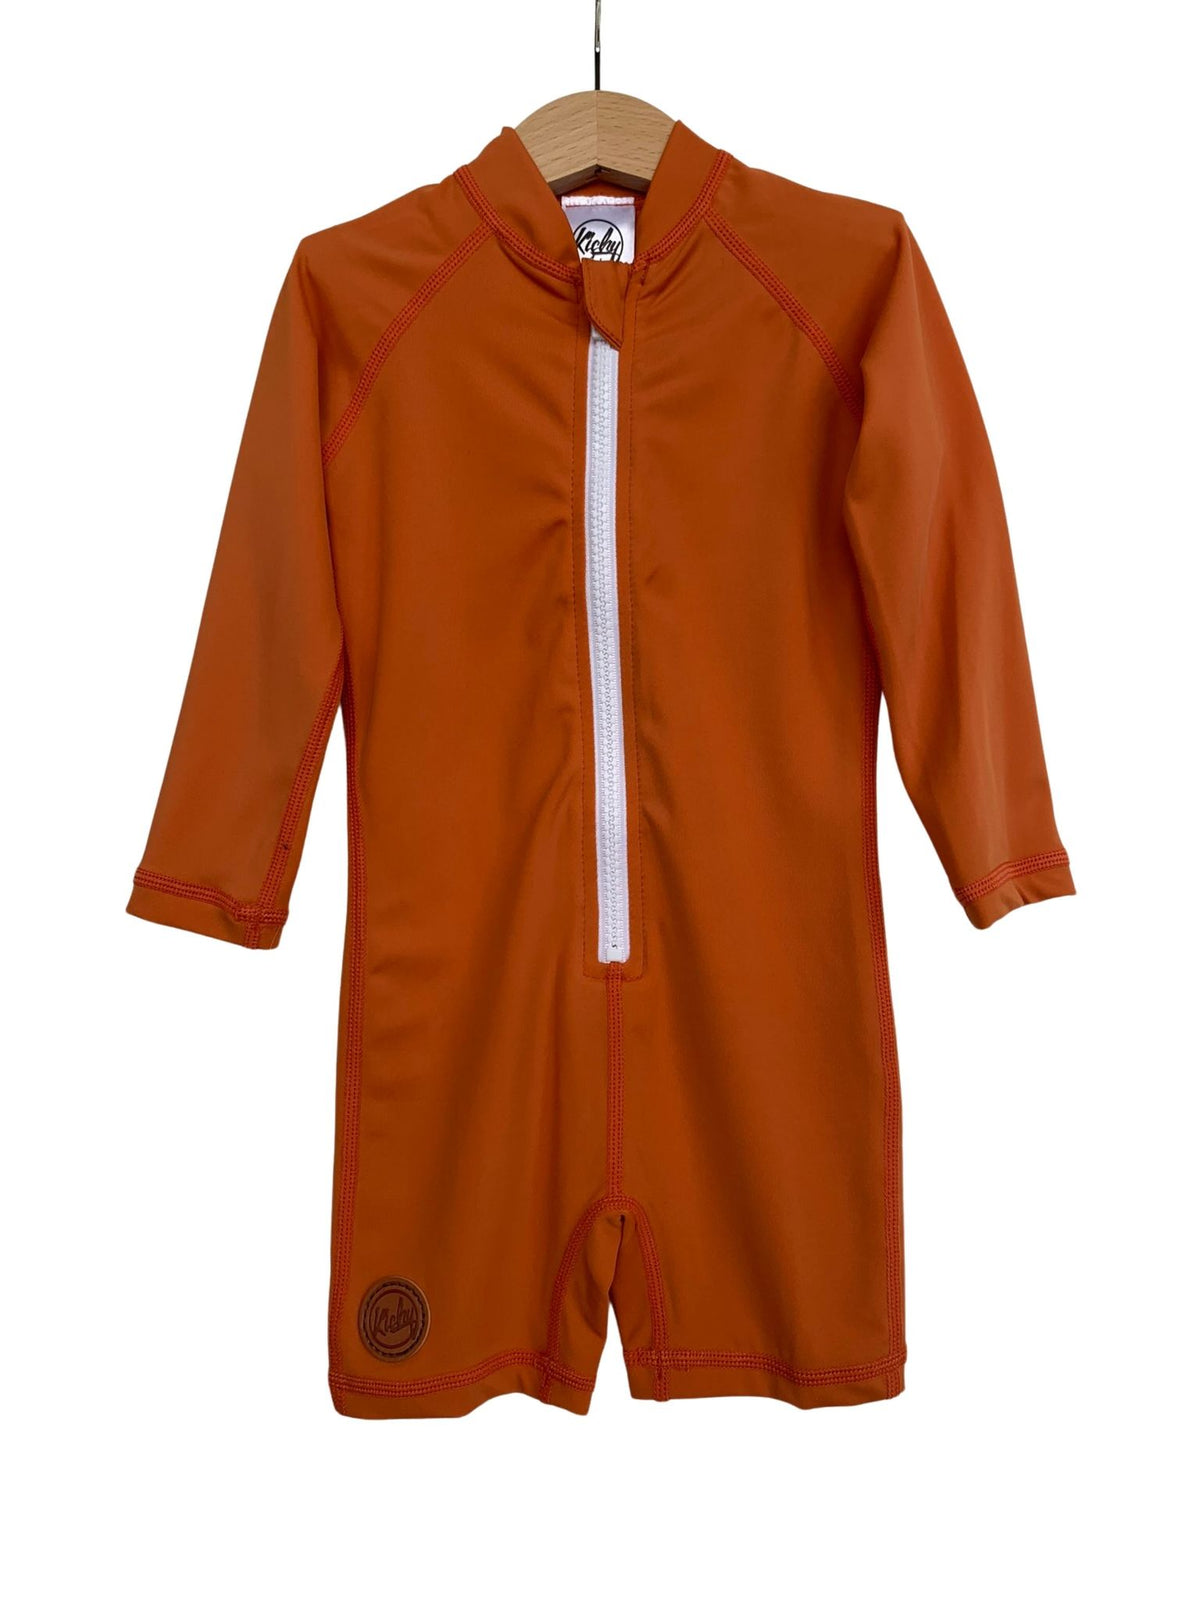 Kicky Swim - One Piece Rashguard Suit | Rust Orange